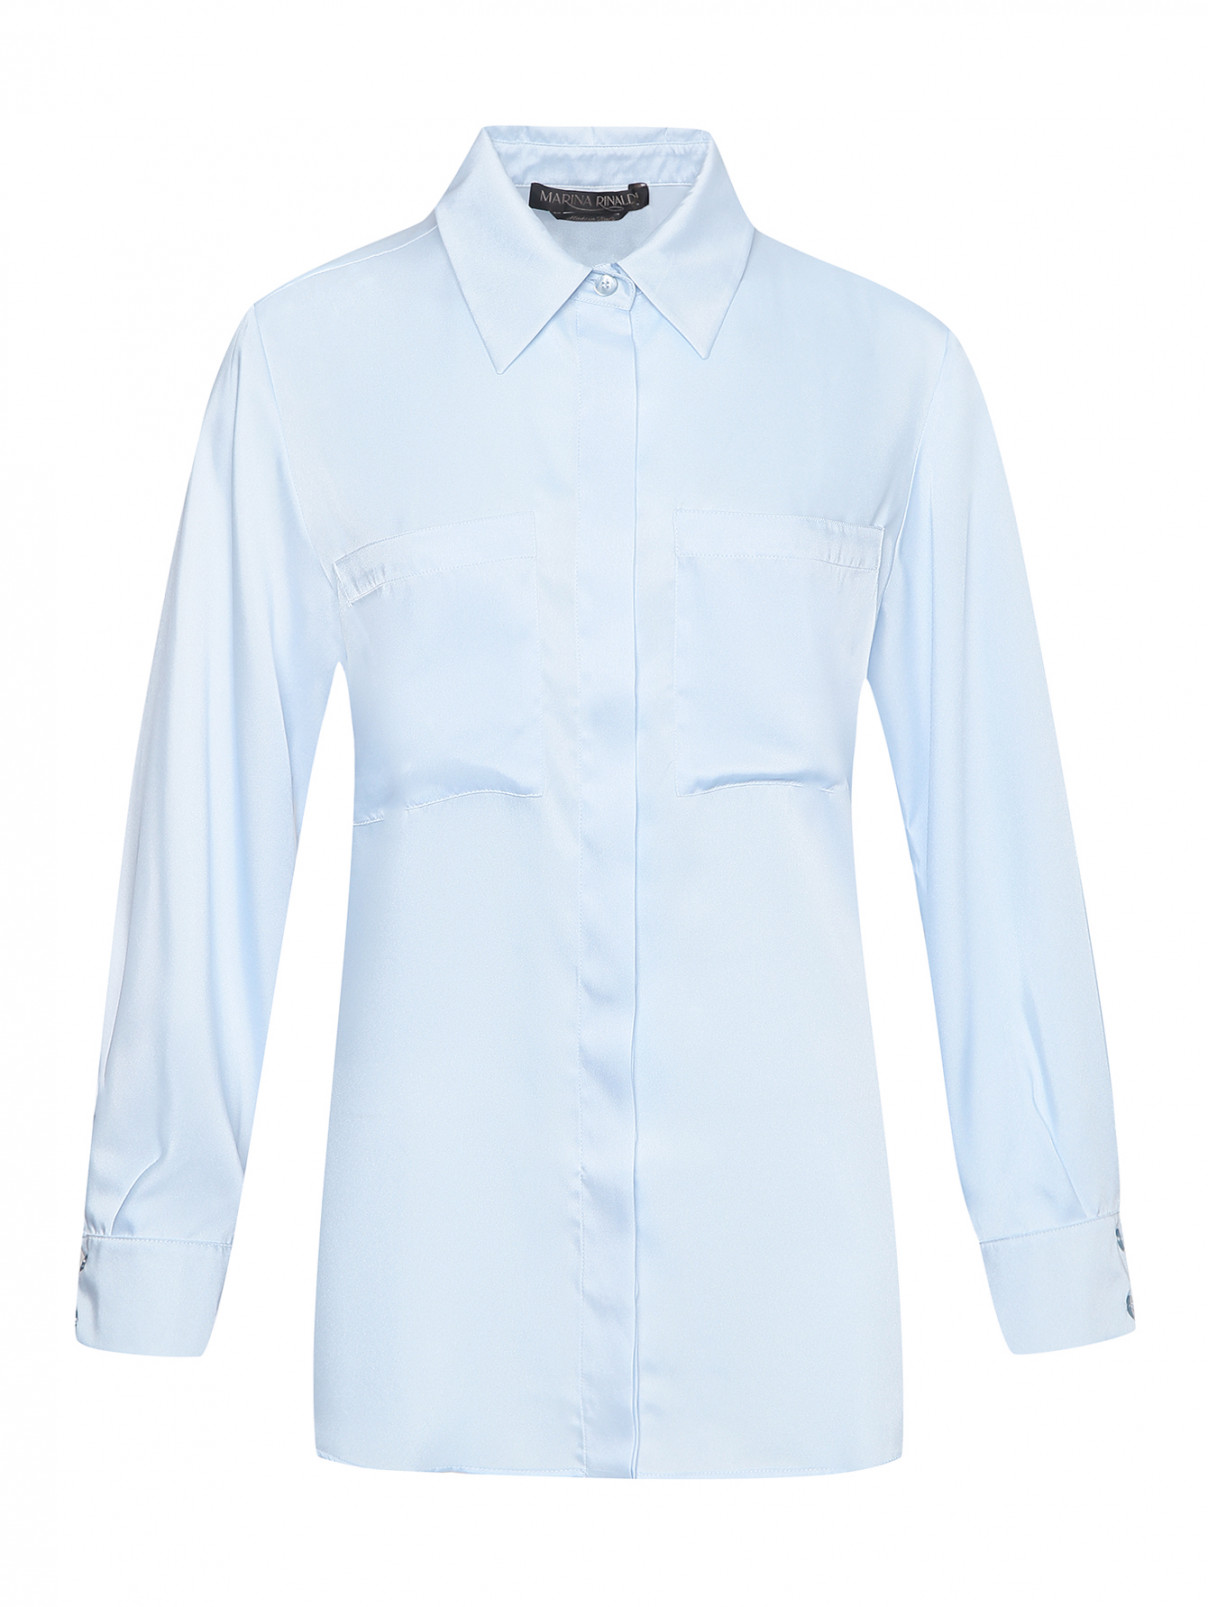 Однотонная блуза с накладными карманами Marina Rinaldi  –  Общий вид  – Цвет:  Синий